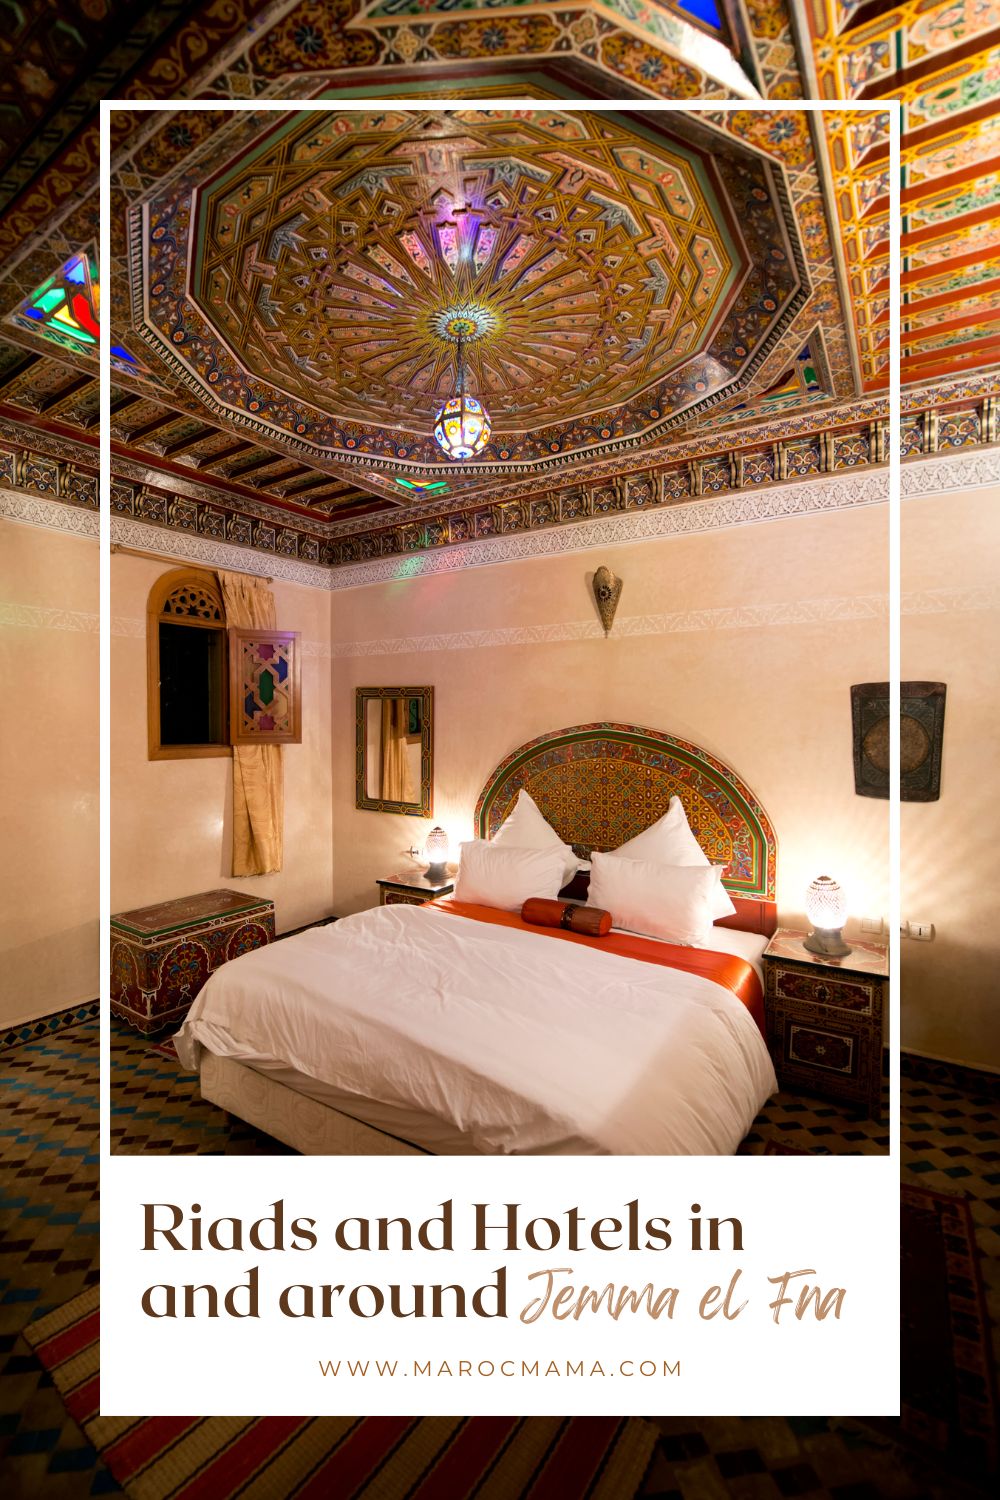 Interior of a hotel suite in Jemma el Fna, Morocco